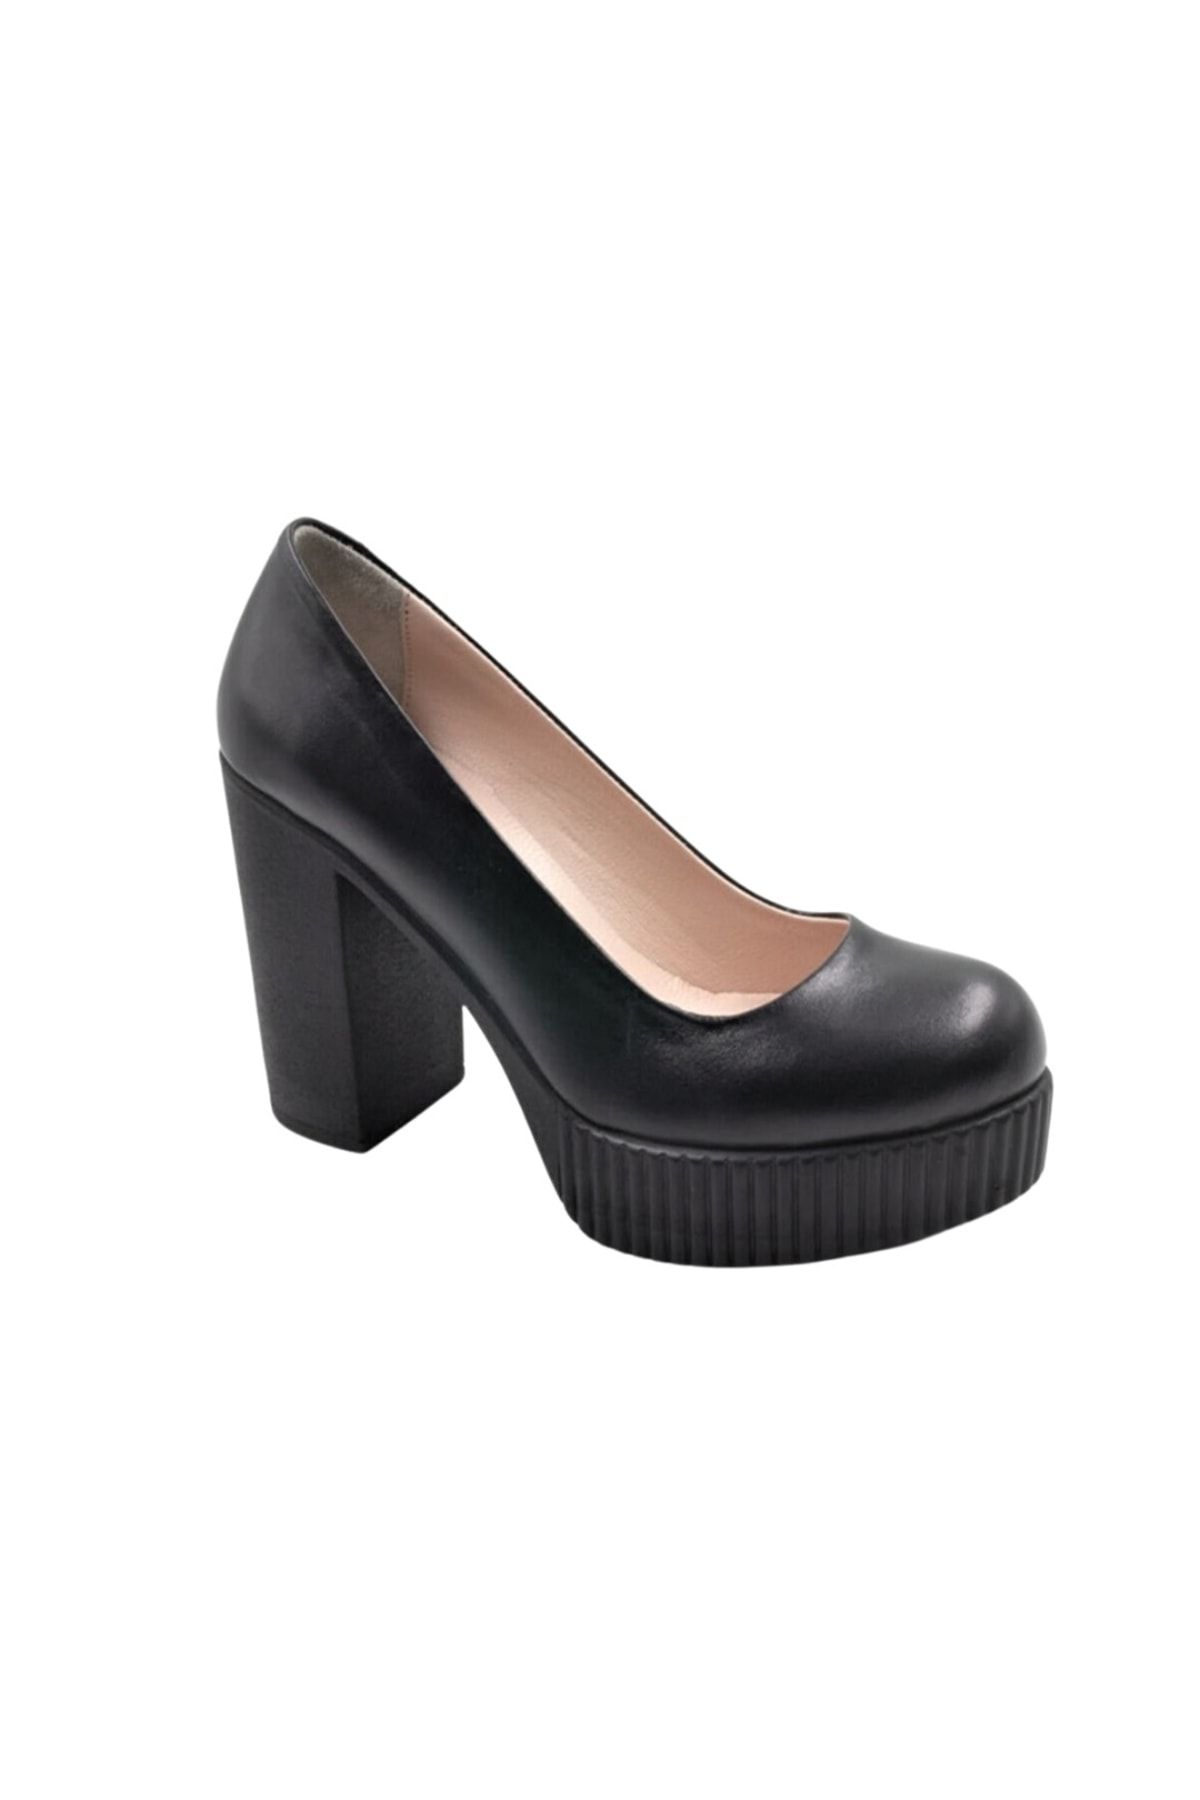 Impero Kadın Siyah Deri Kalın Topuklu Ayakkabı